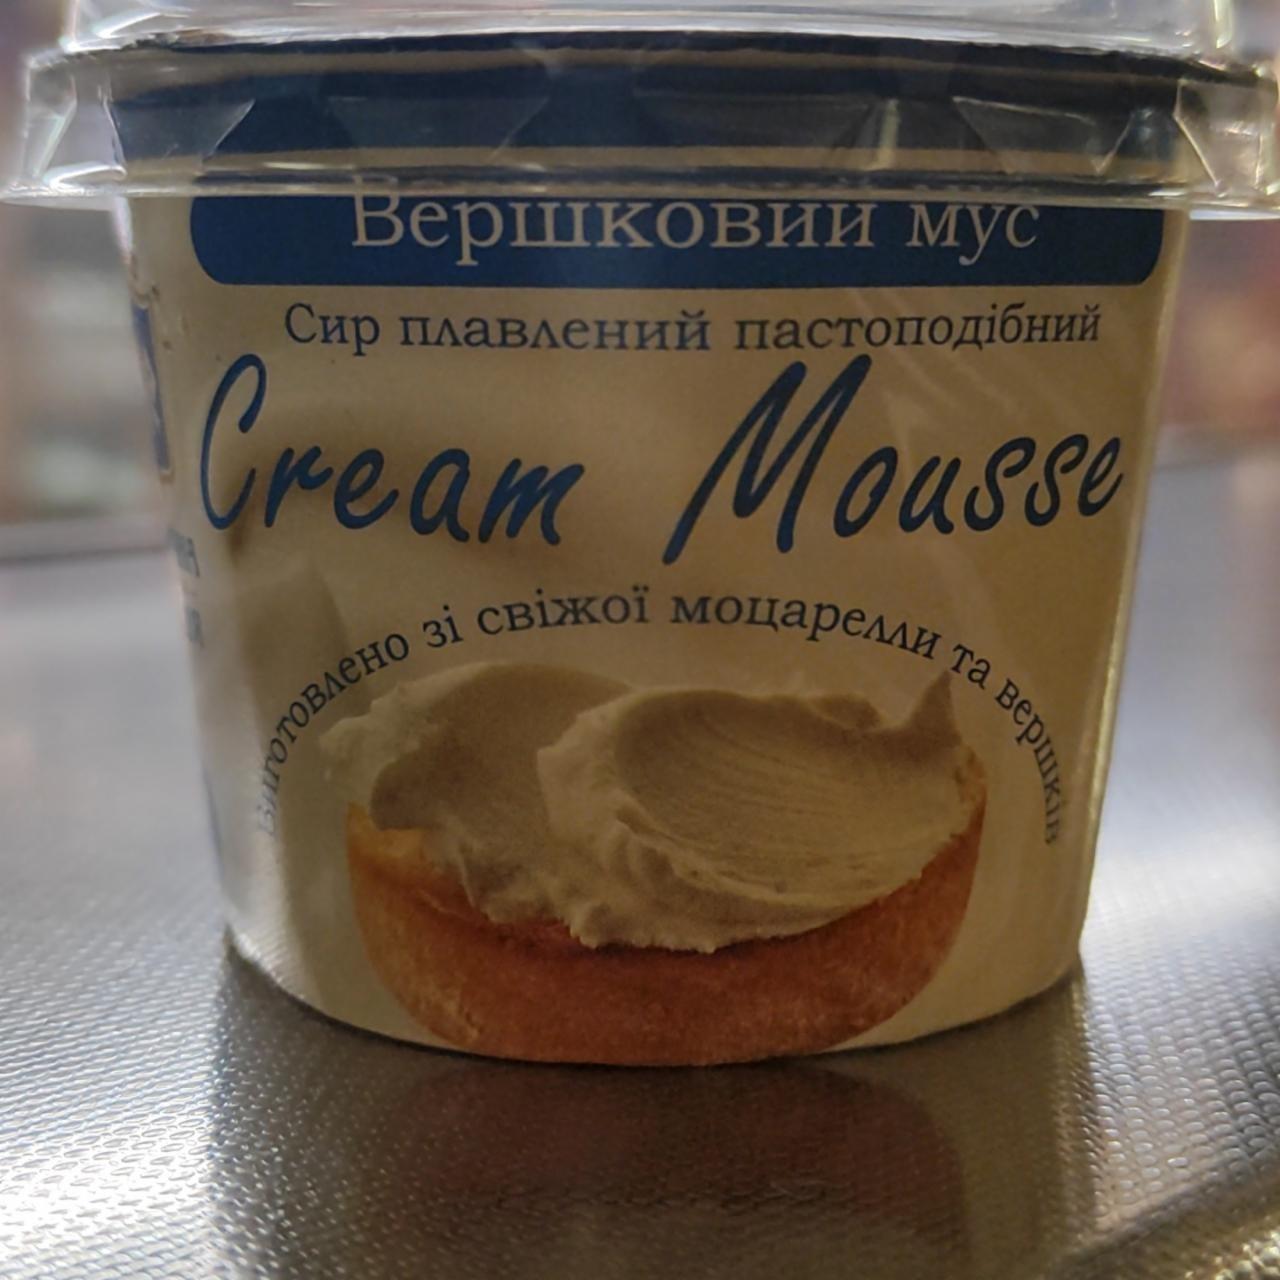 Фото - Сыр плавленый пастообразный Cream Mousse Молочная Гильдия